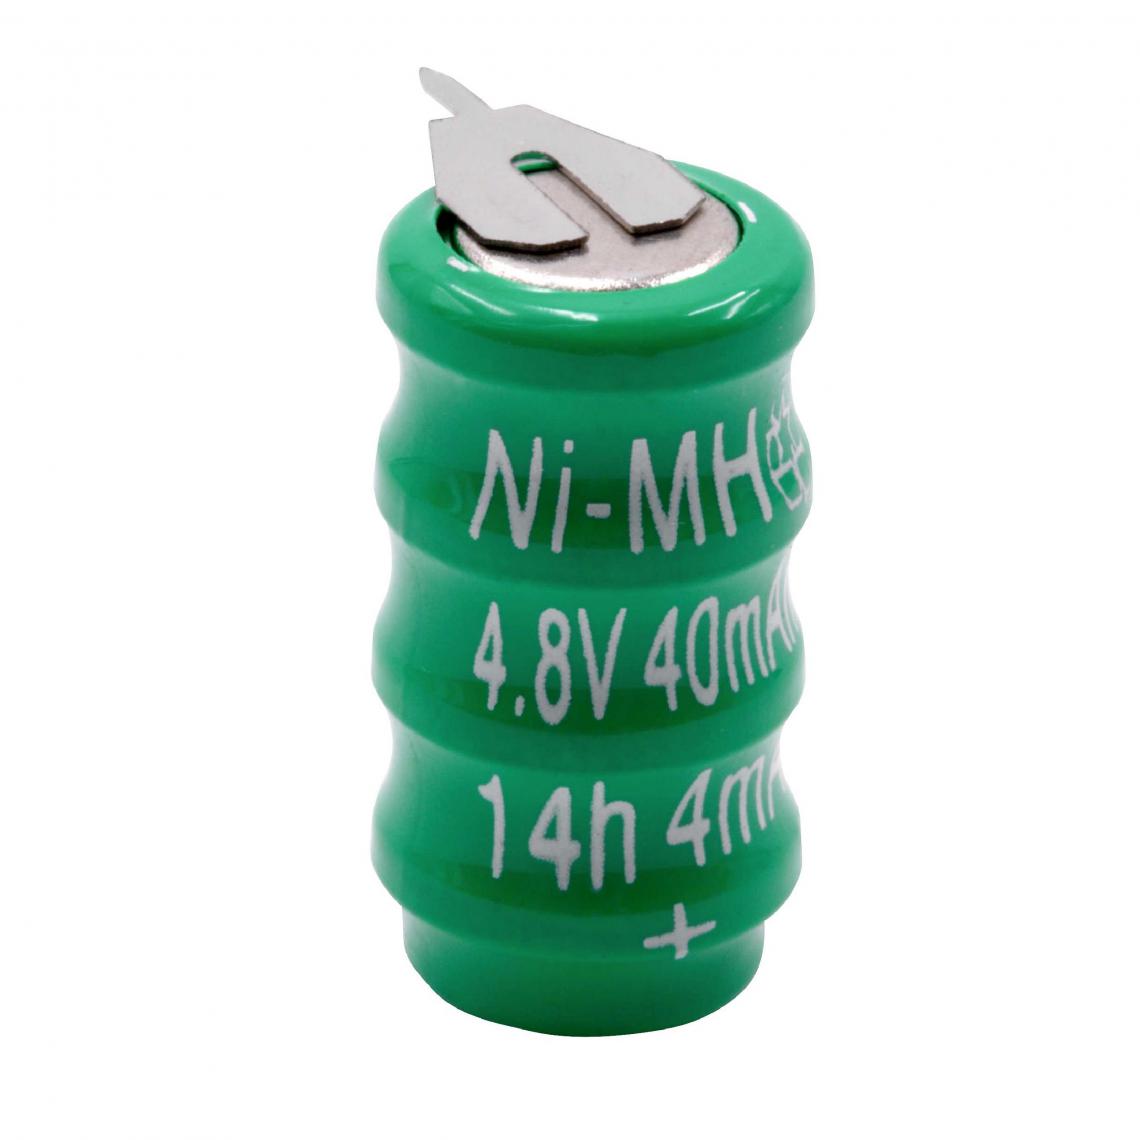 Vhbw - vhbw NiMH Remplacement de la pile bouton (4x cellule) type V40H, 40mAh 4.8V convient pour les batteries de modélisme, l'éclairage solaire, etc. - Autre appareil de mesure